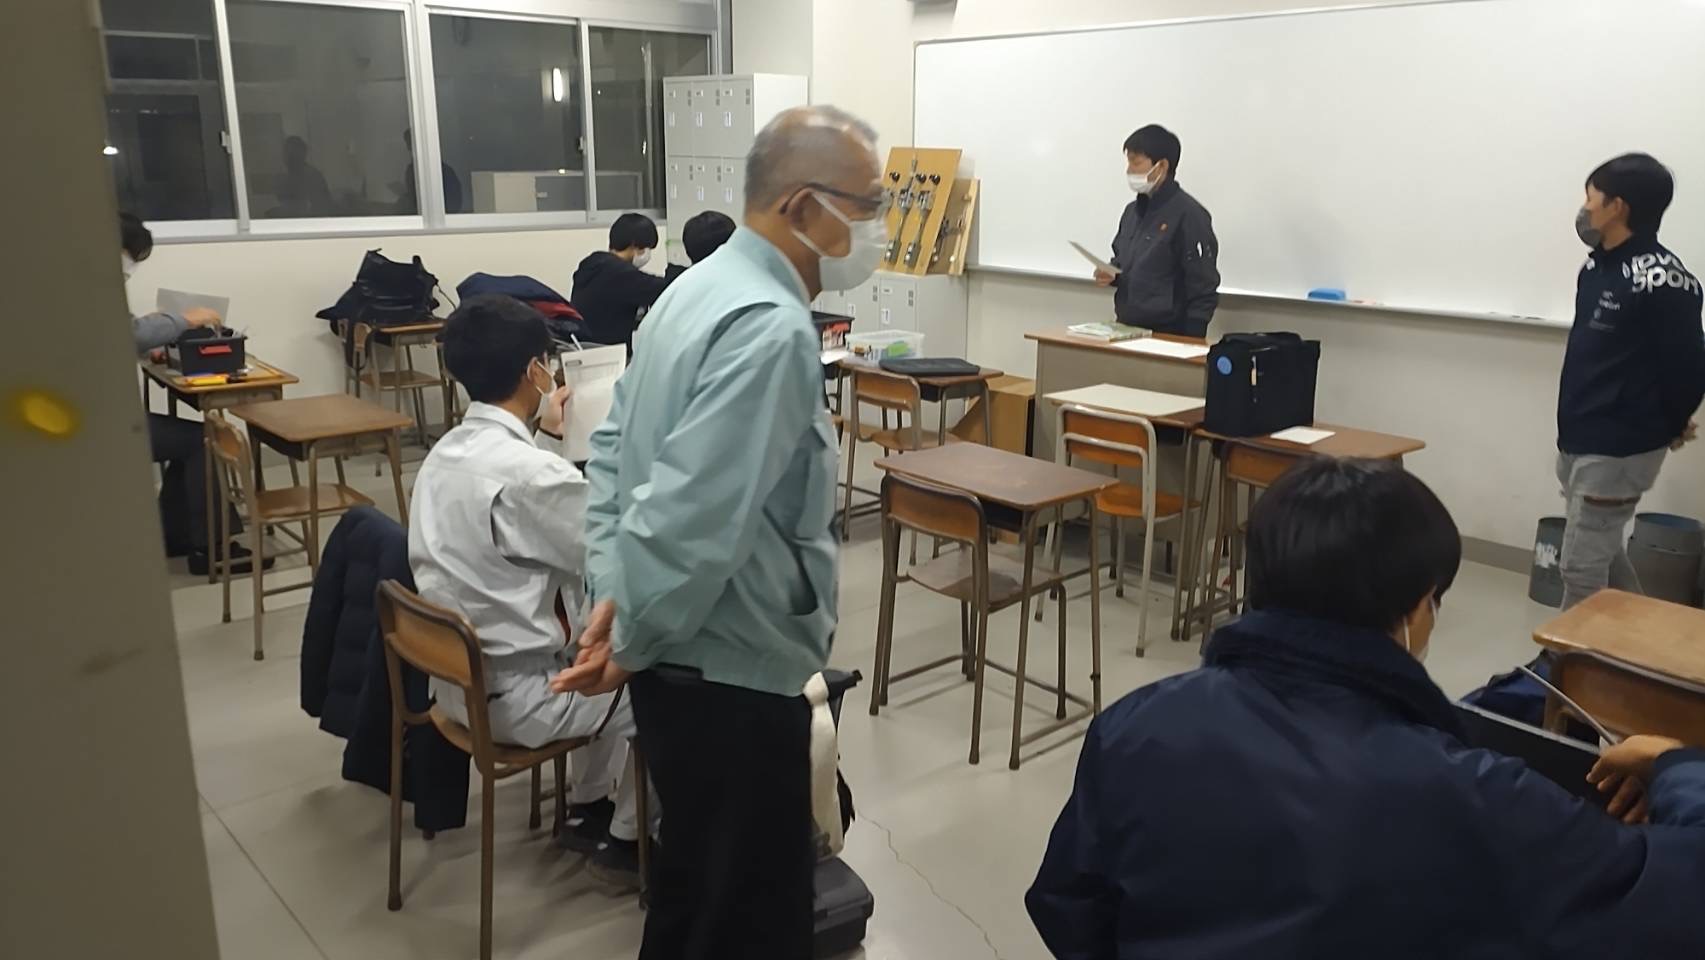 神崎工業高校での第2種電気工事士技能試験指導を行いました(後期)のイメージ